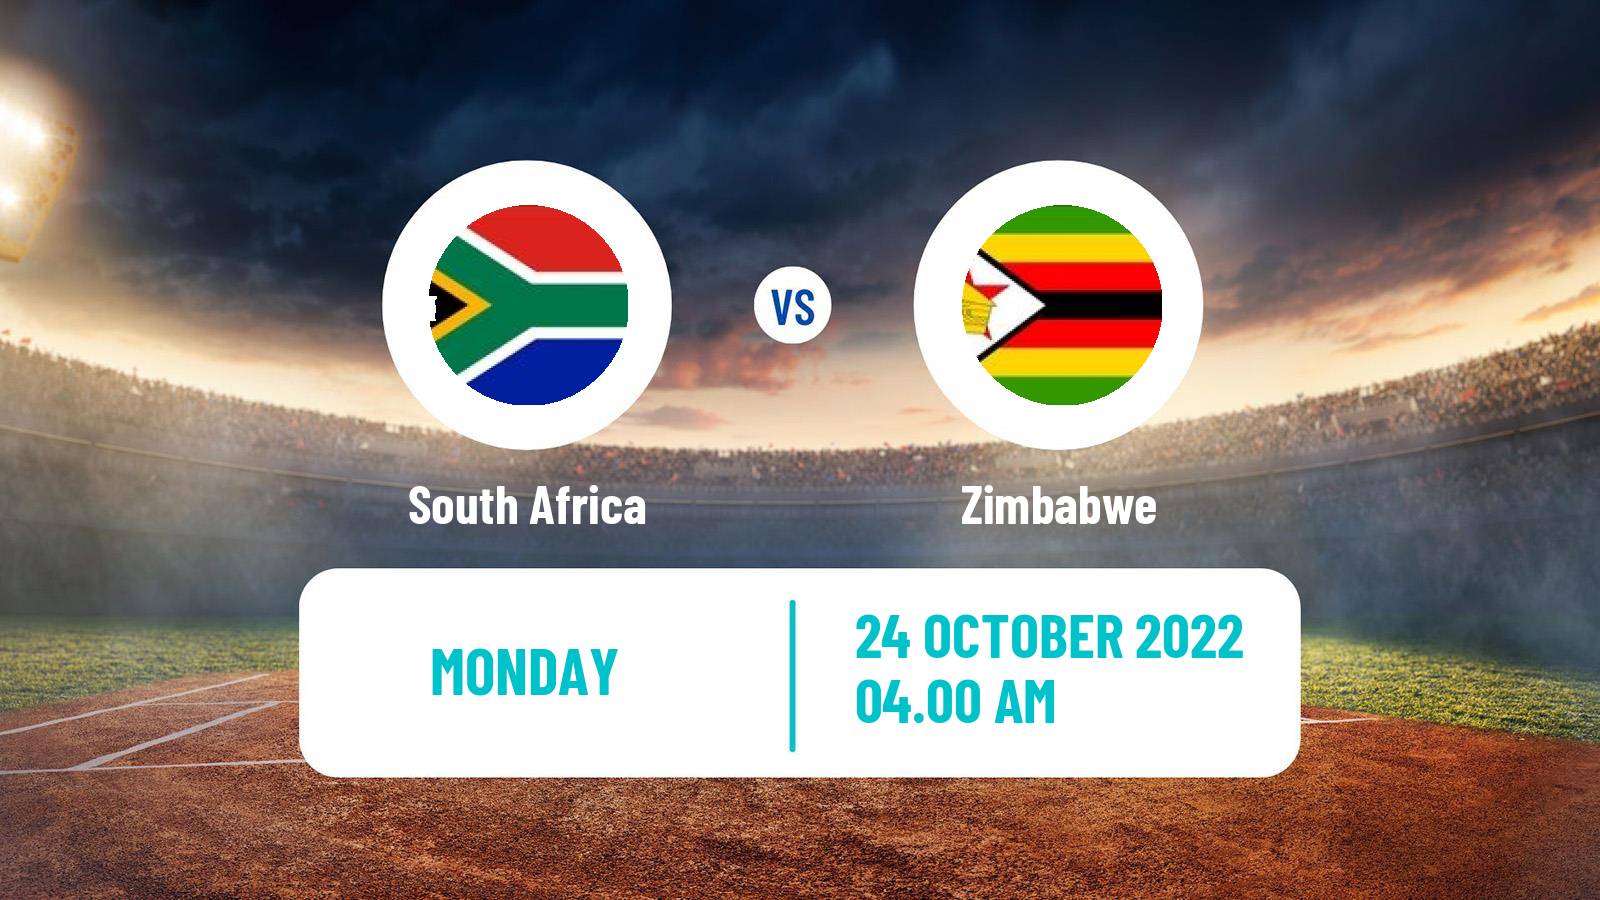 Cricket ICC World Twenty20 South Africa - Zimbabwe